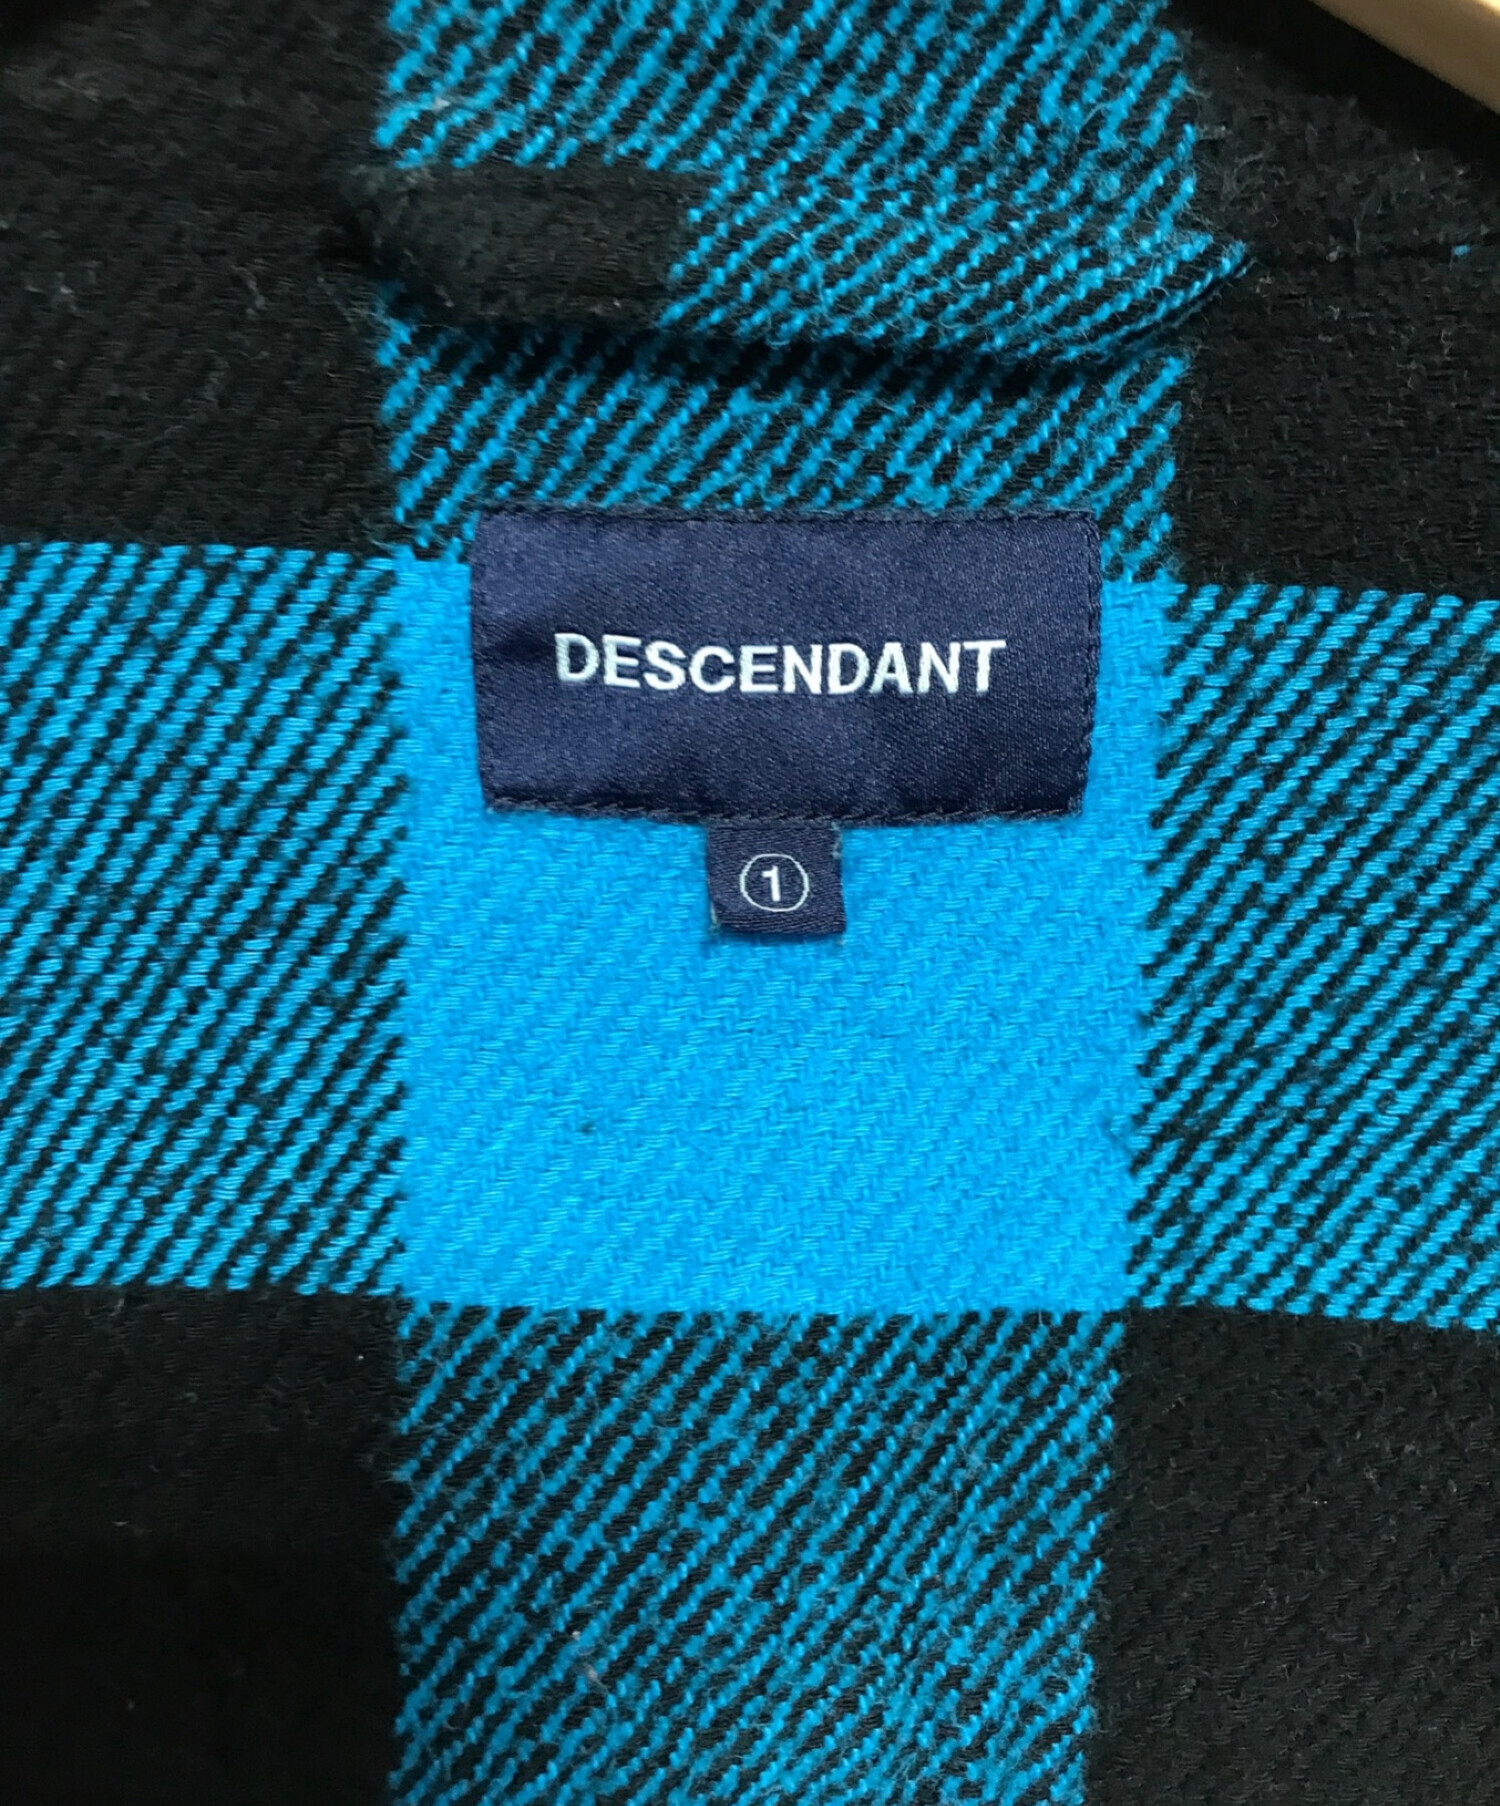 DESCENDANT (ディセンダント) チェックネルシャツ ブルー サイズ:SIZE 1 下記参照